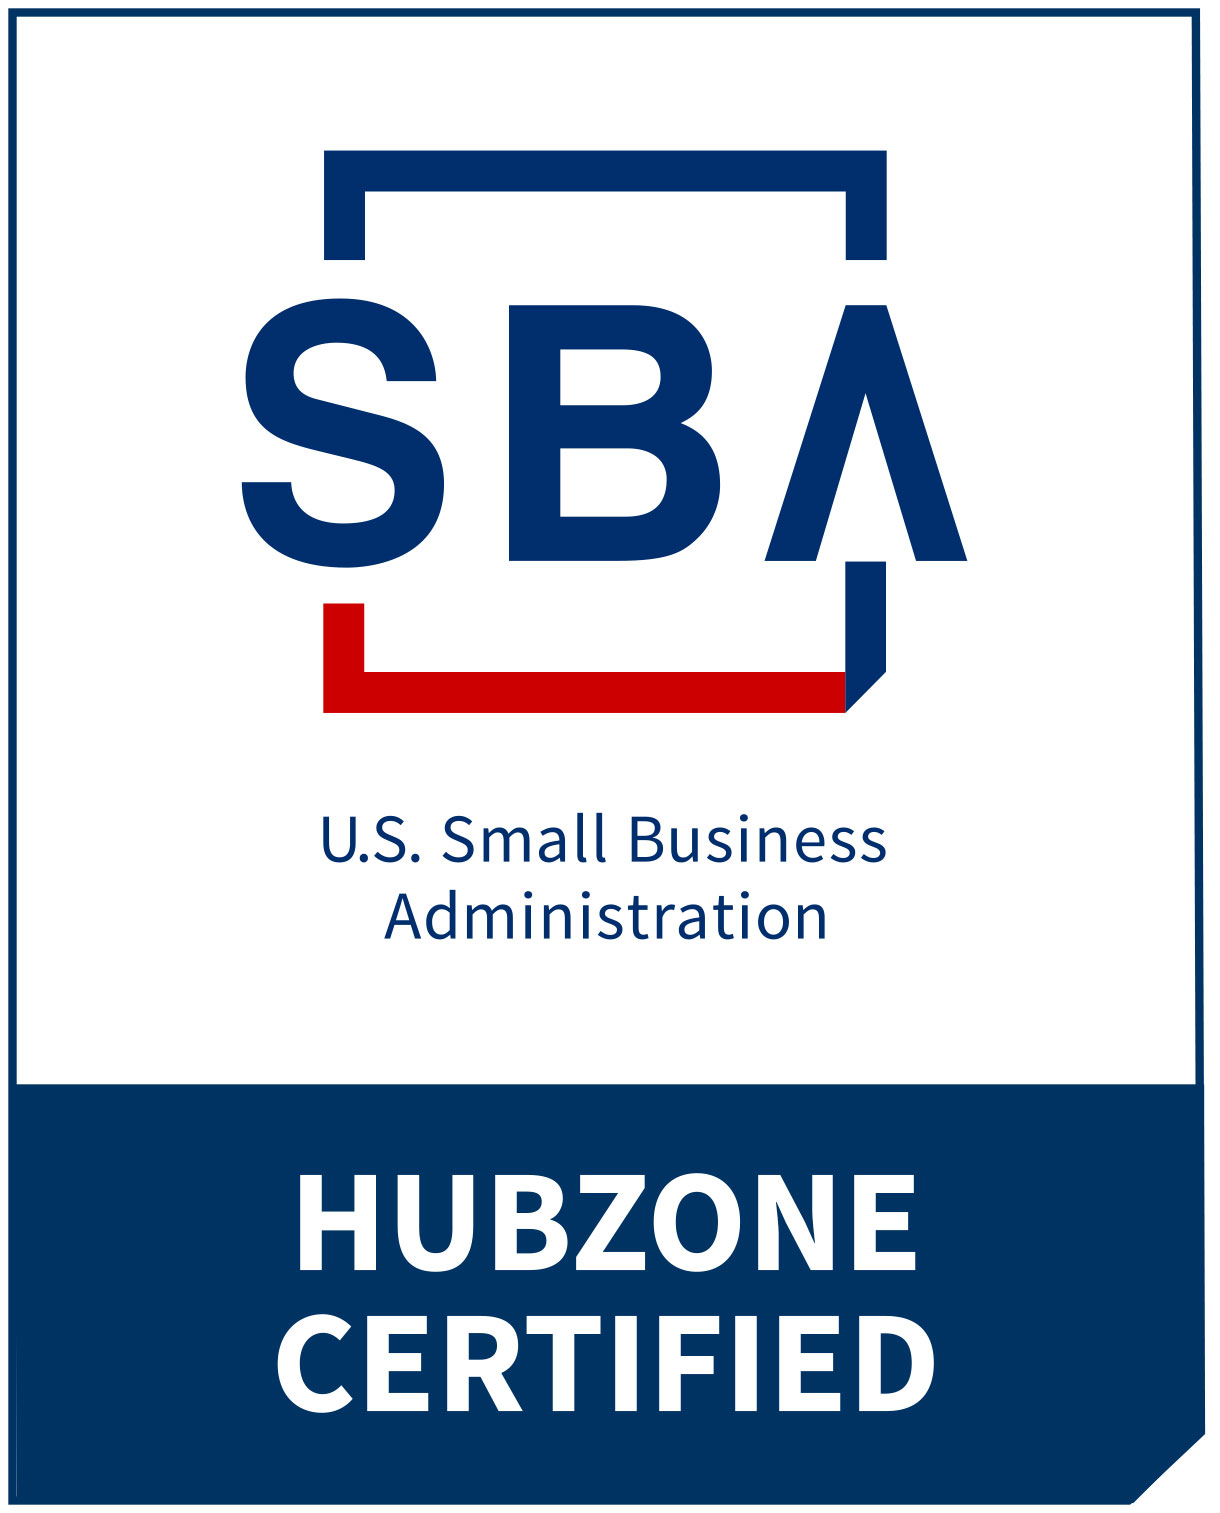 HUBZone-Certified